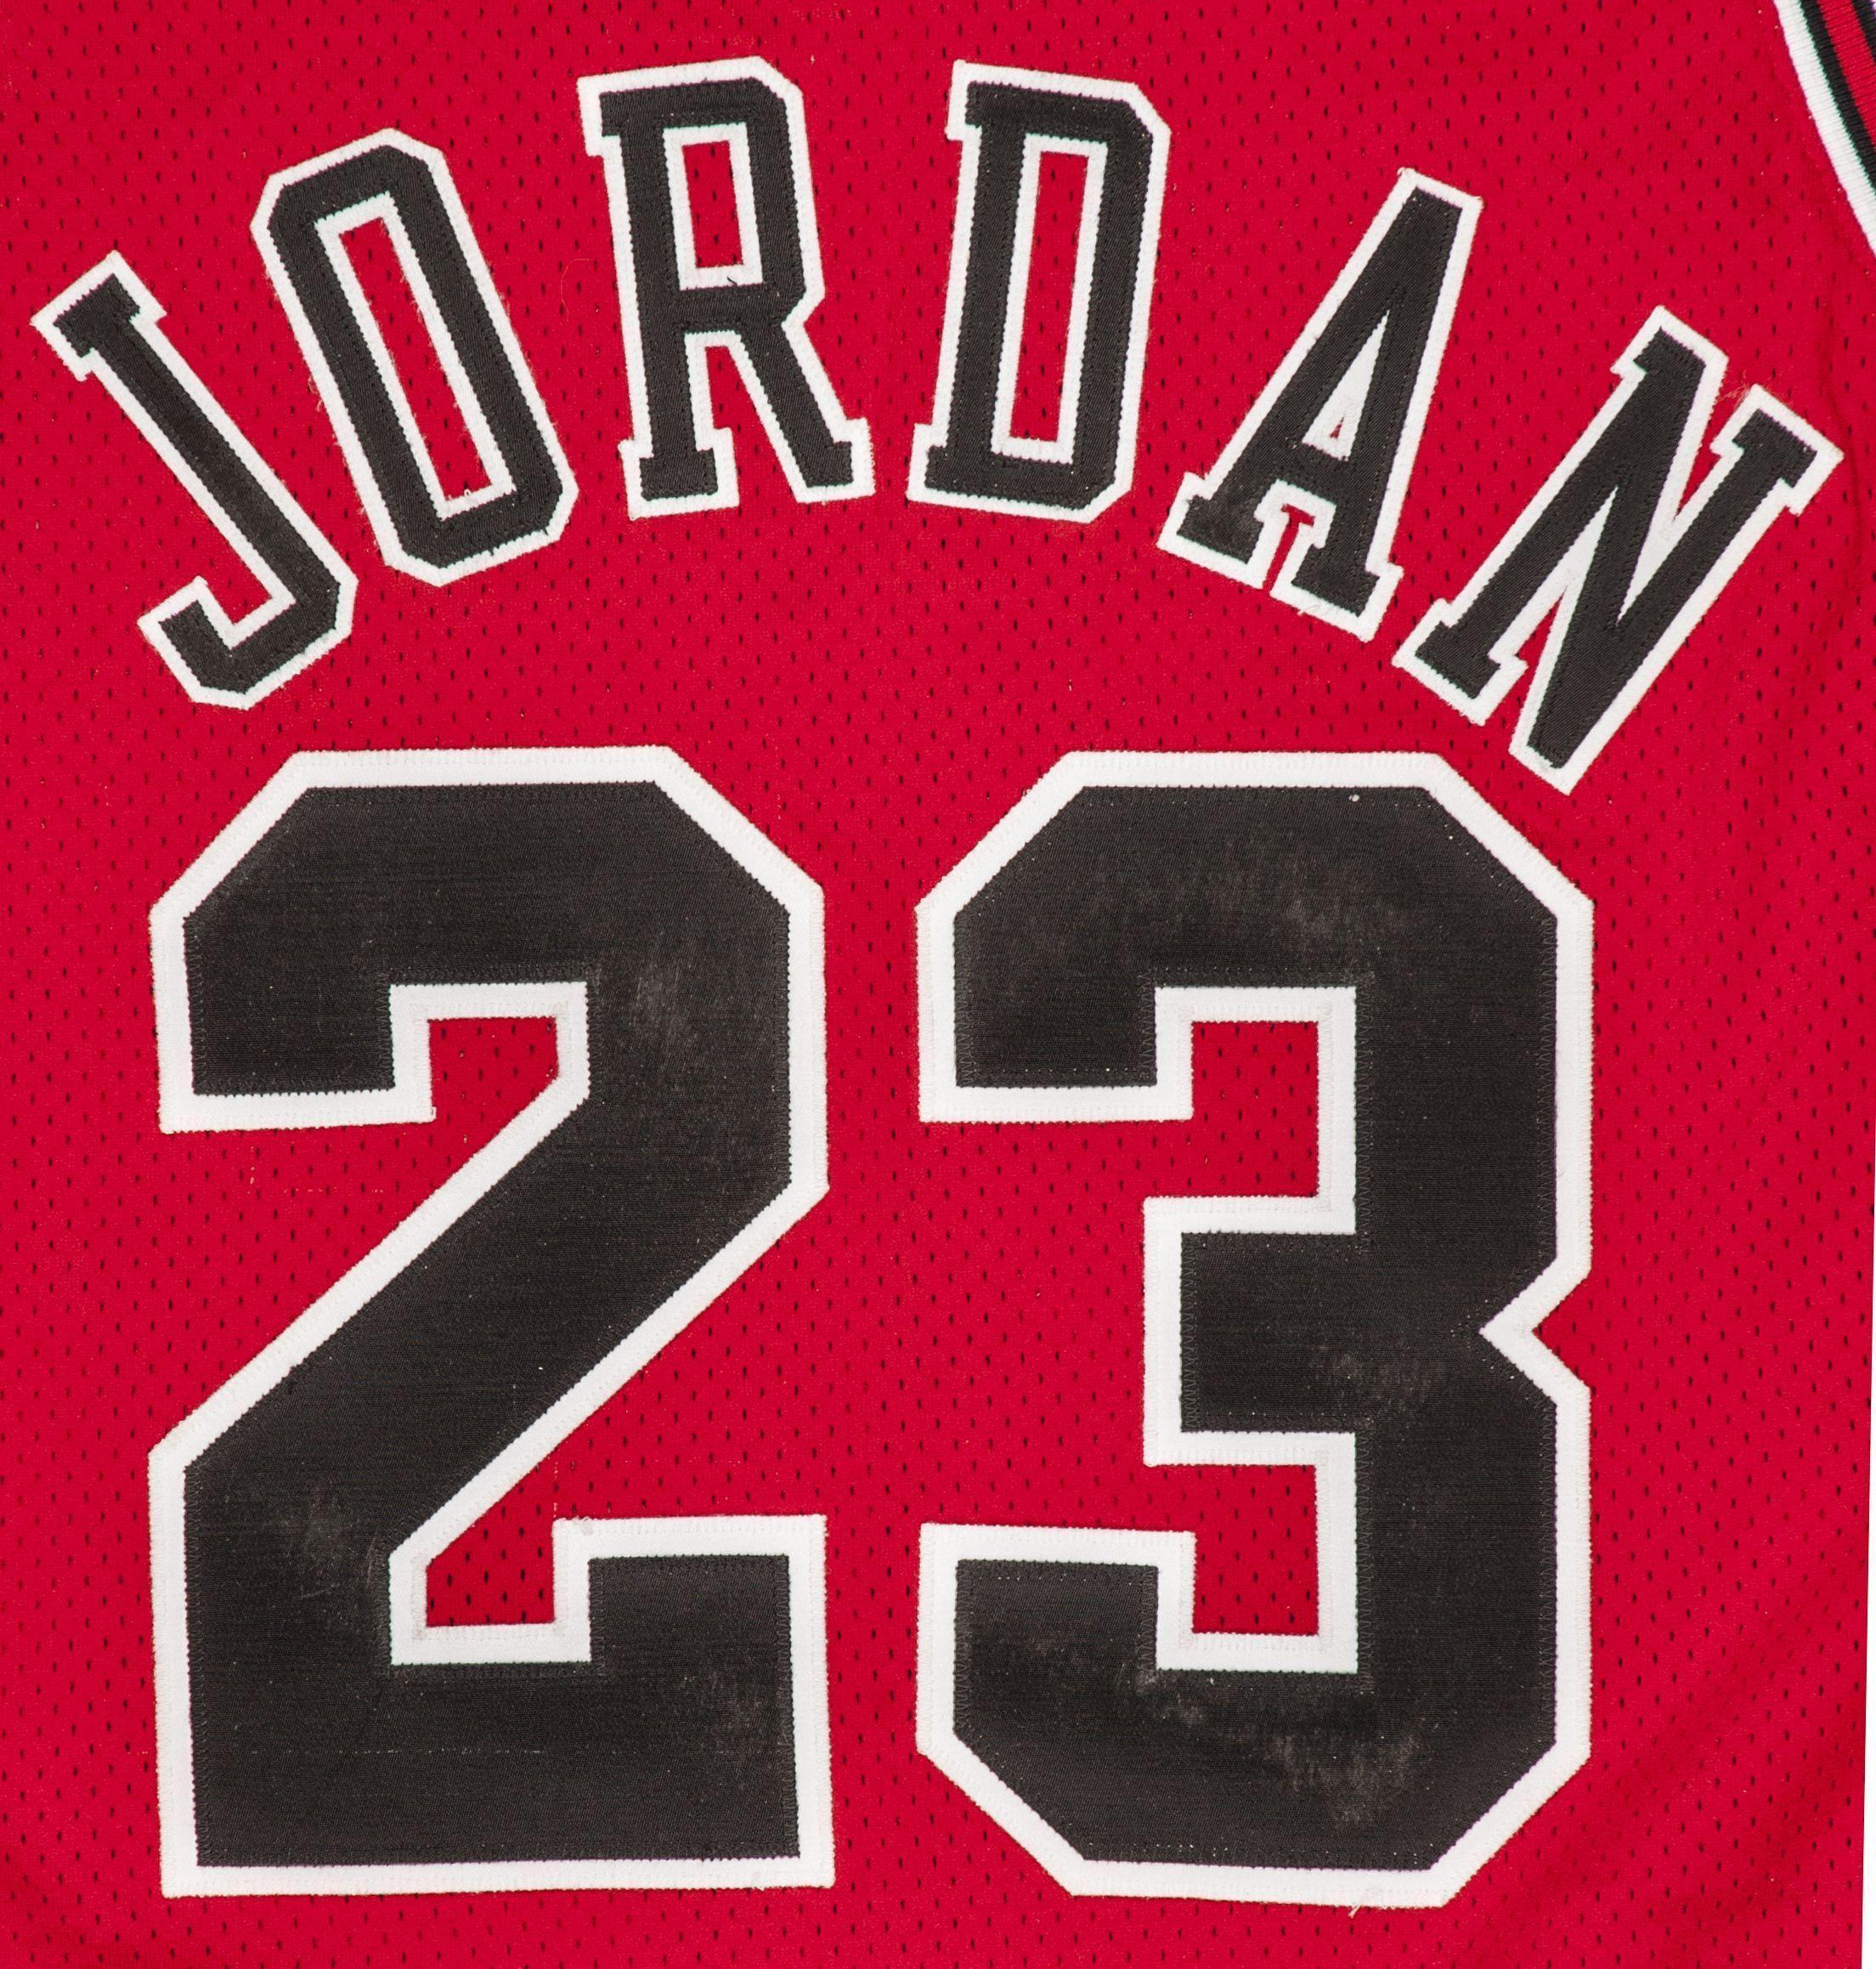 Jordan with Jordan 23 Logo - Jordan 23 Logos